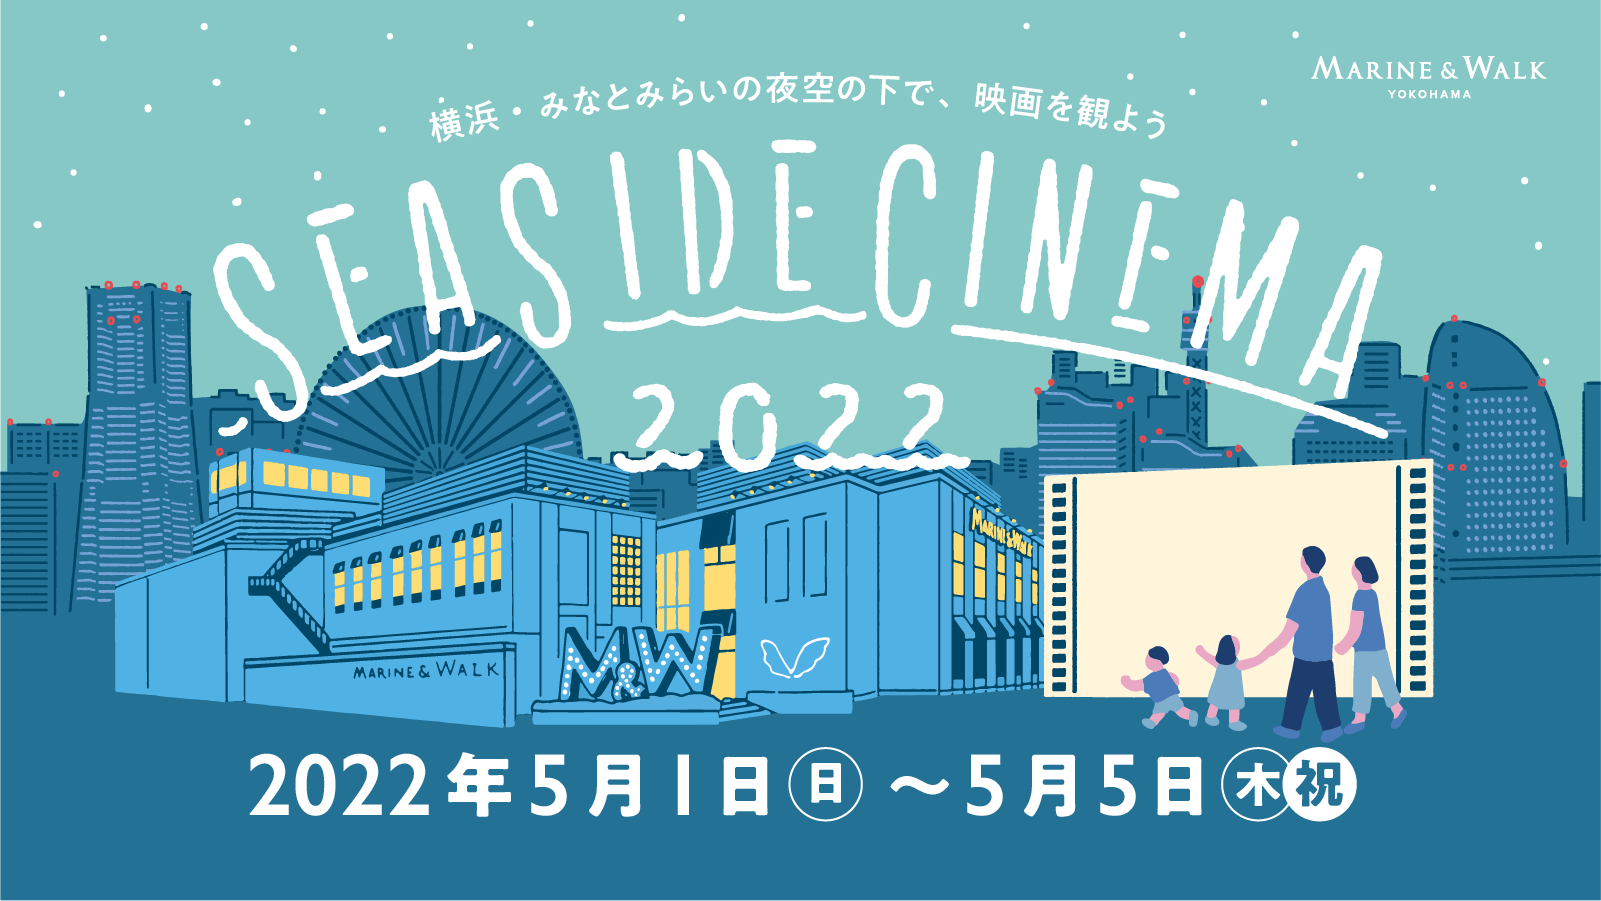 SEASIDE CINEMA 2022 5.1 SUN - 5.5 THU